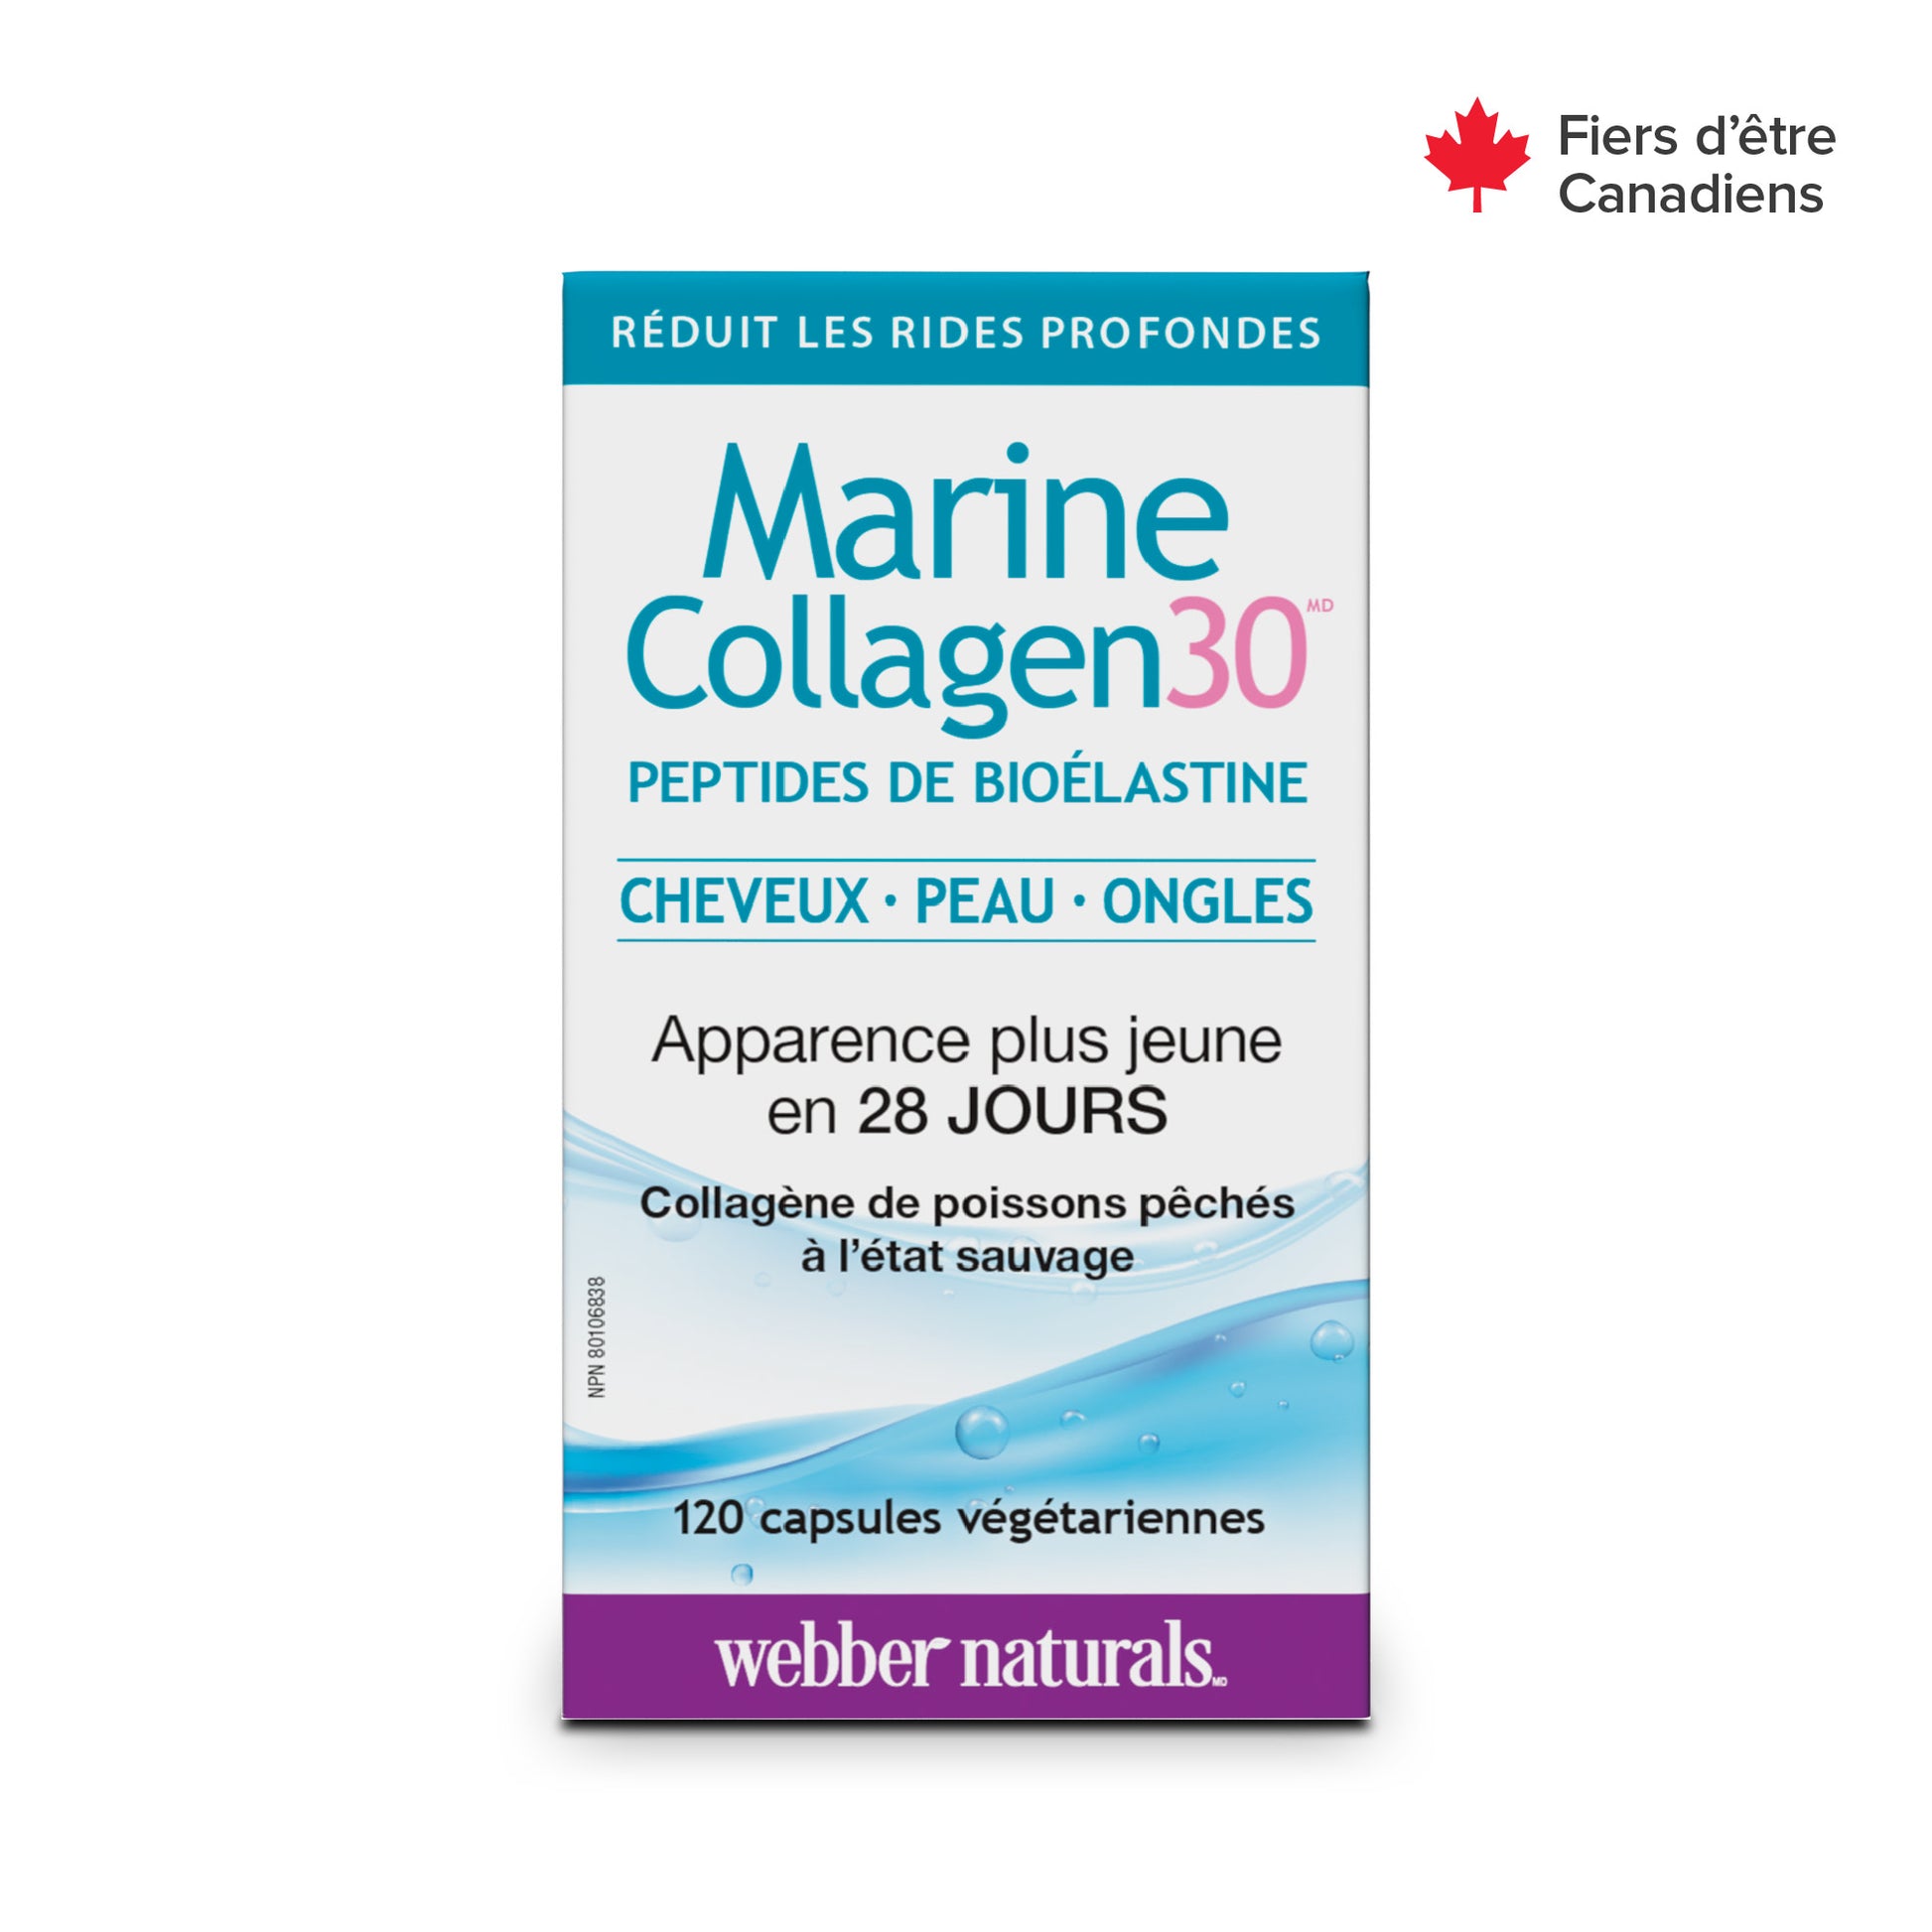 Marine Collagen30® Bioelastin Peptides for Webber Naturals|v|hi-res|WN3657